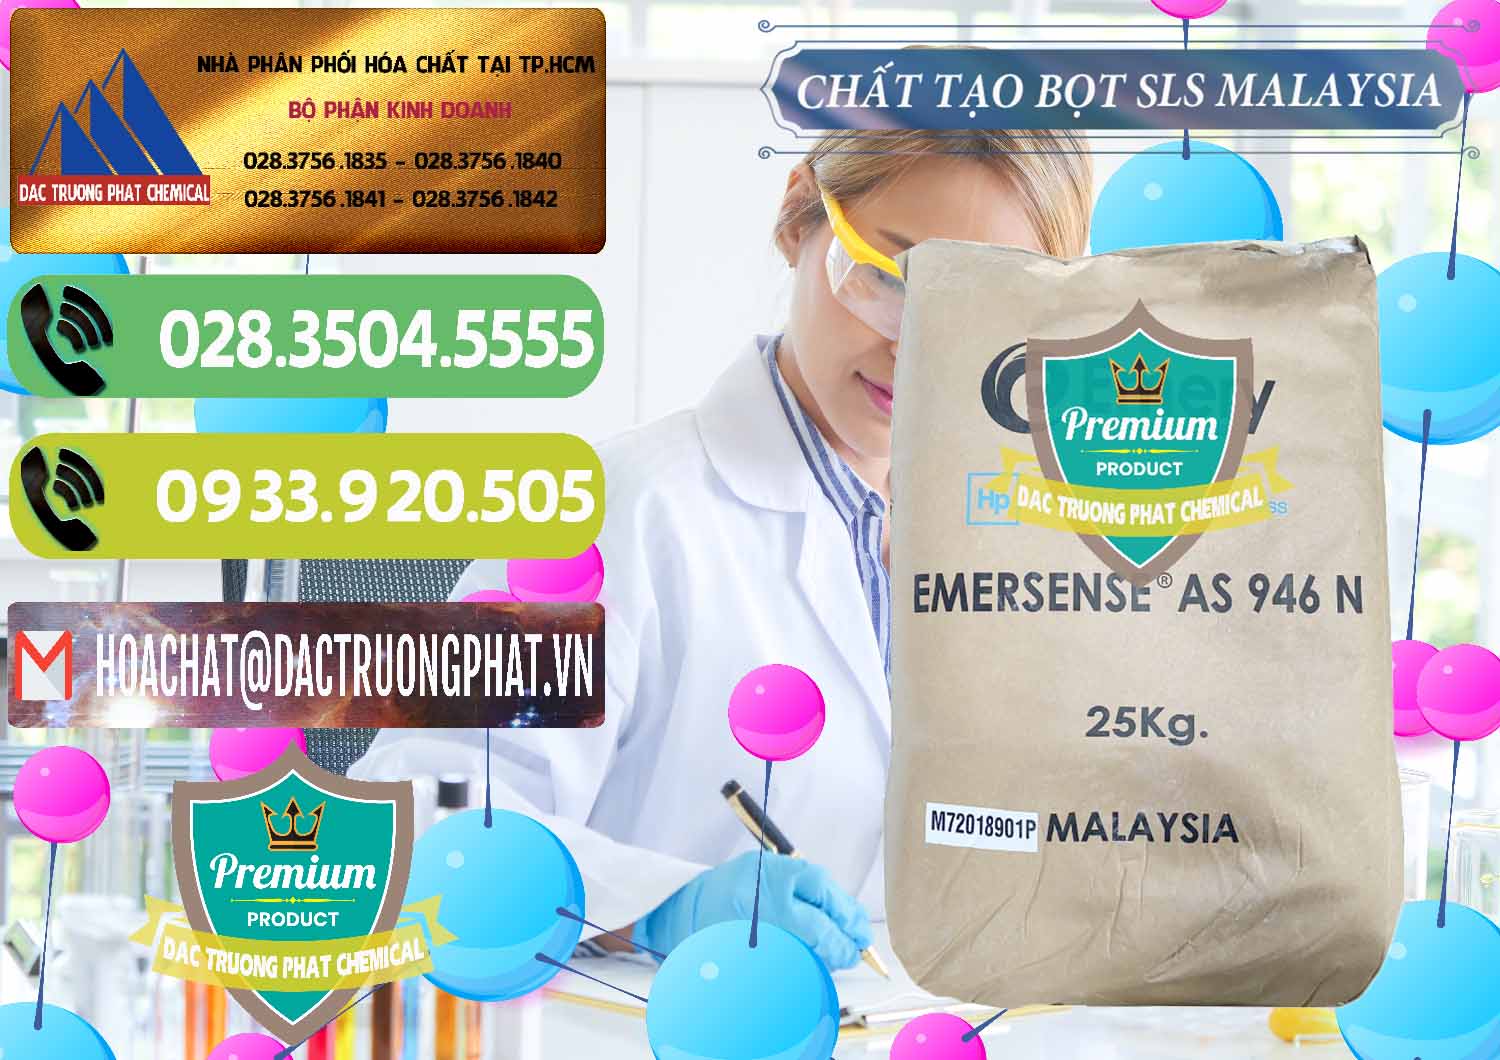 Nơi kinh doanh - bán Chất Tạo Bọt SLS Emery - Emersense AS 946N Mã Lai Malaysia - 0423 - Công ty chuyên nhập khẩu _ cung cấp hóa chất tại TP.HCM - hoachatmientay.vn